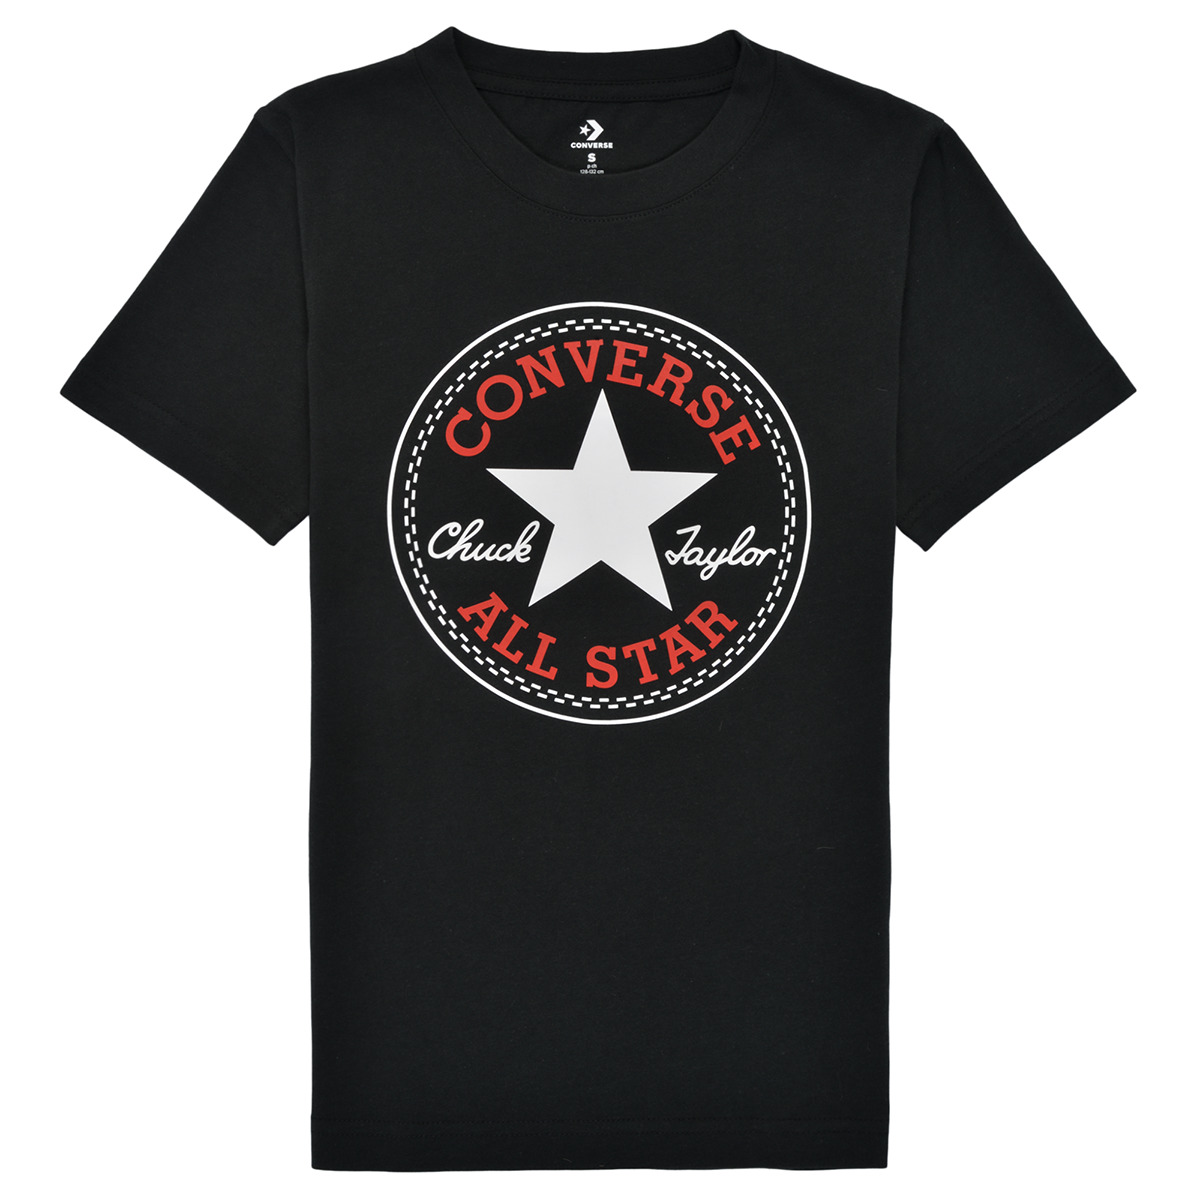 Vêtements Garçon T-shirts manches courtes Converse CORE CHUCK PATCH TEE Noir